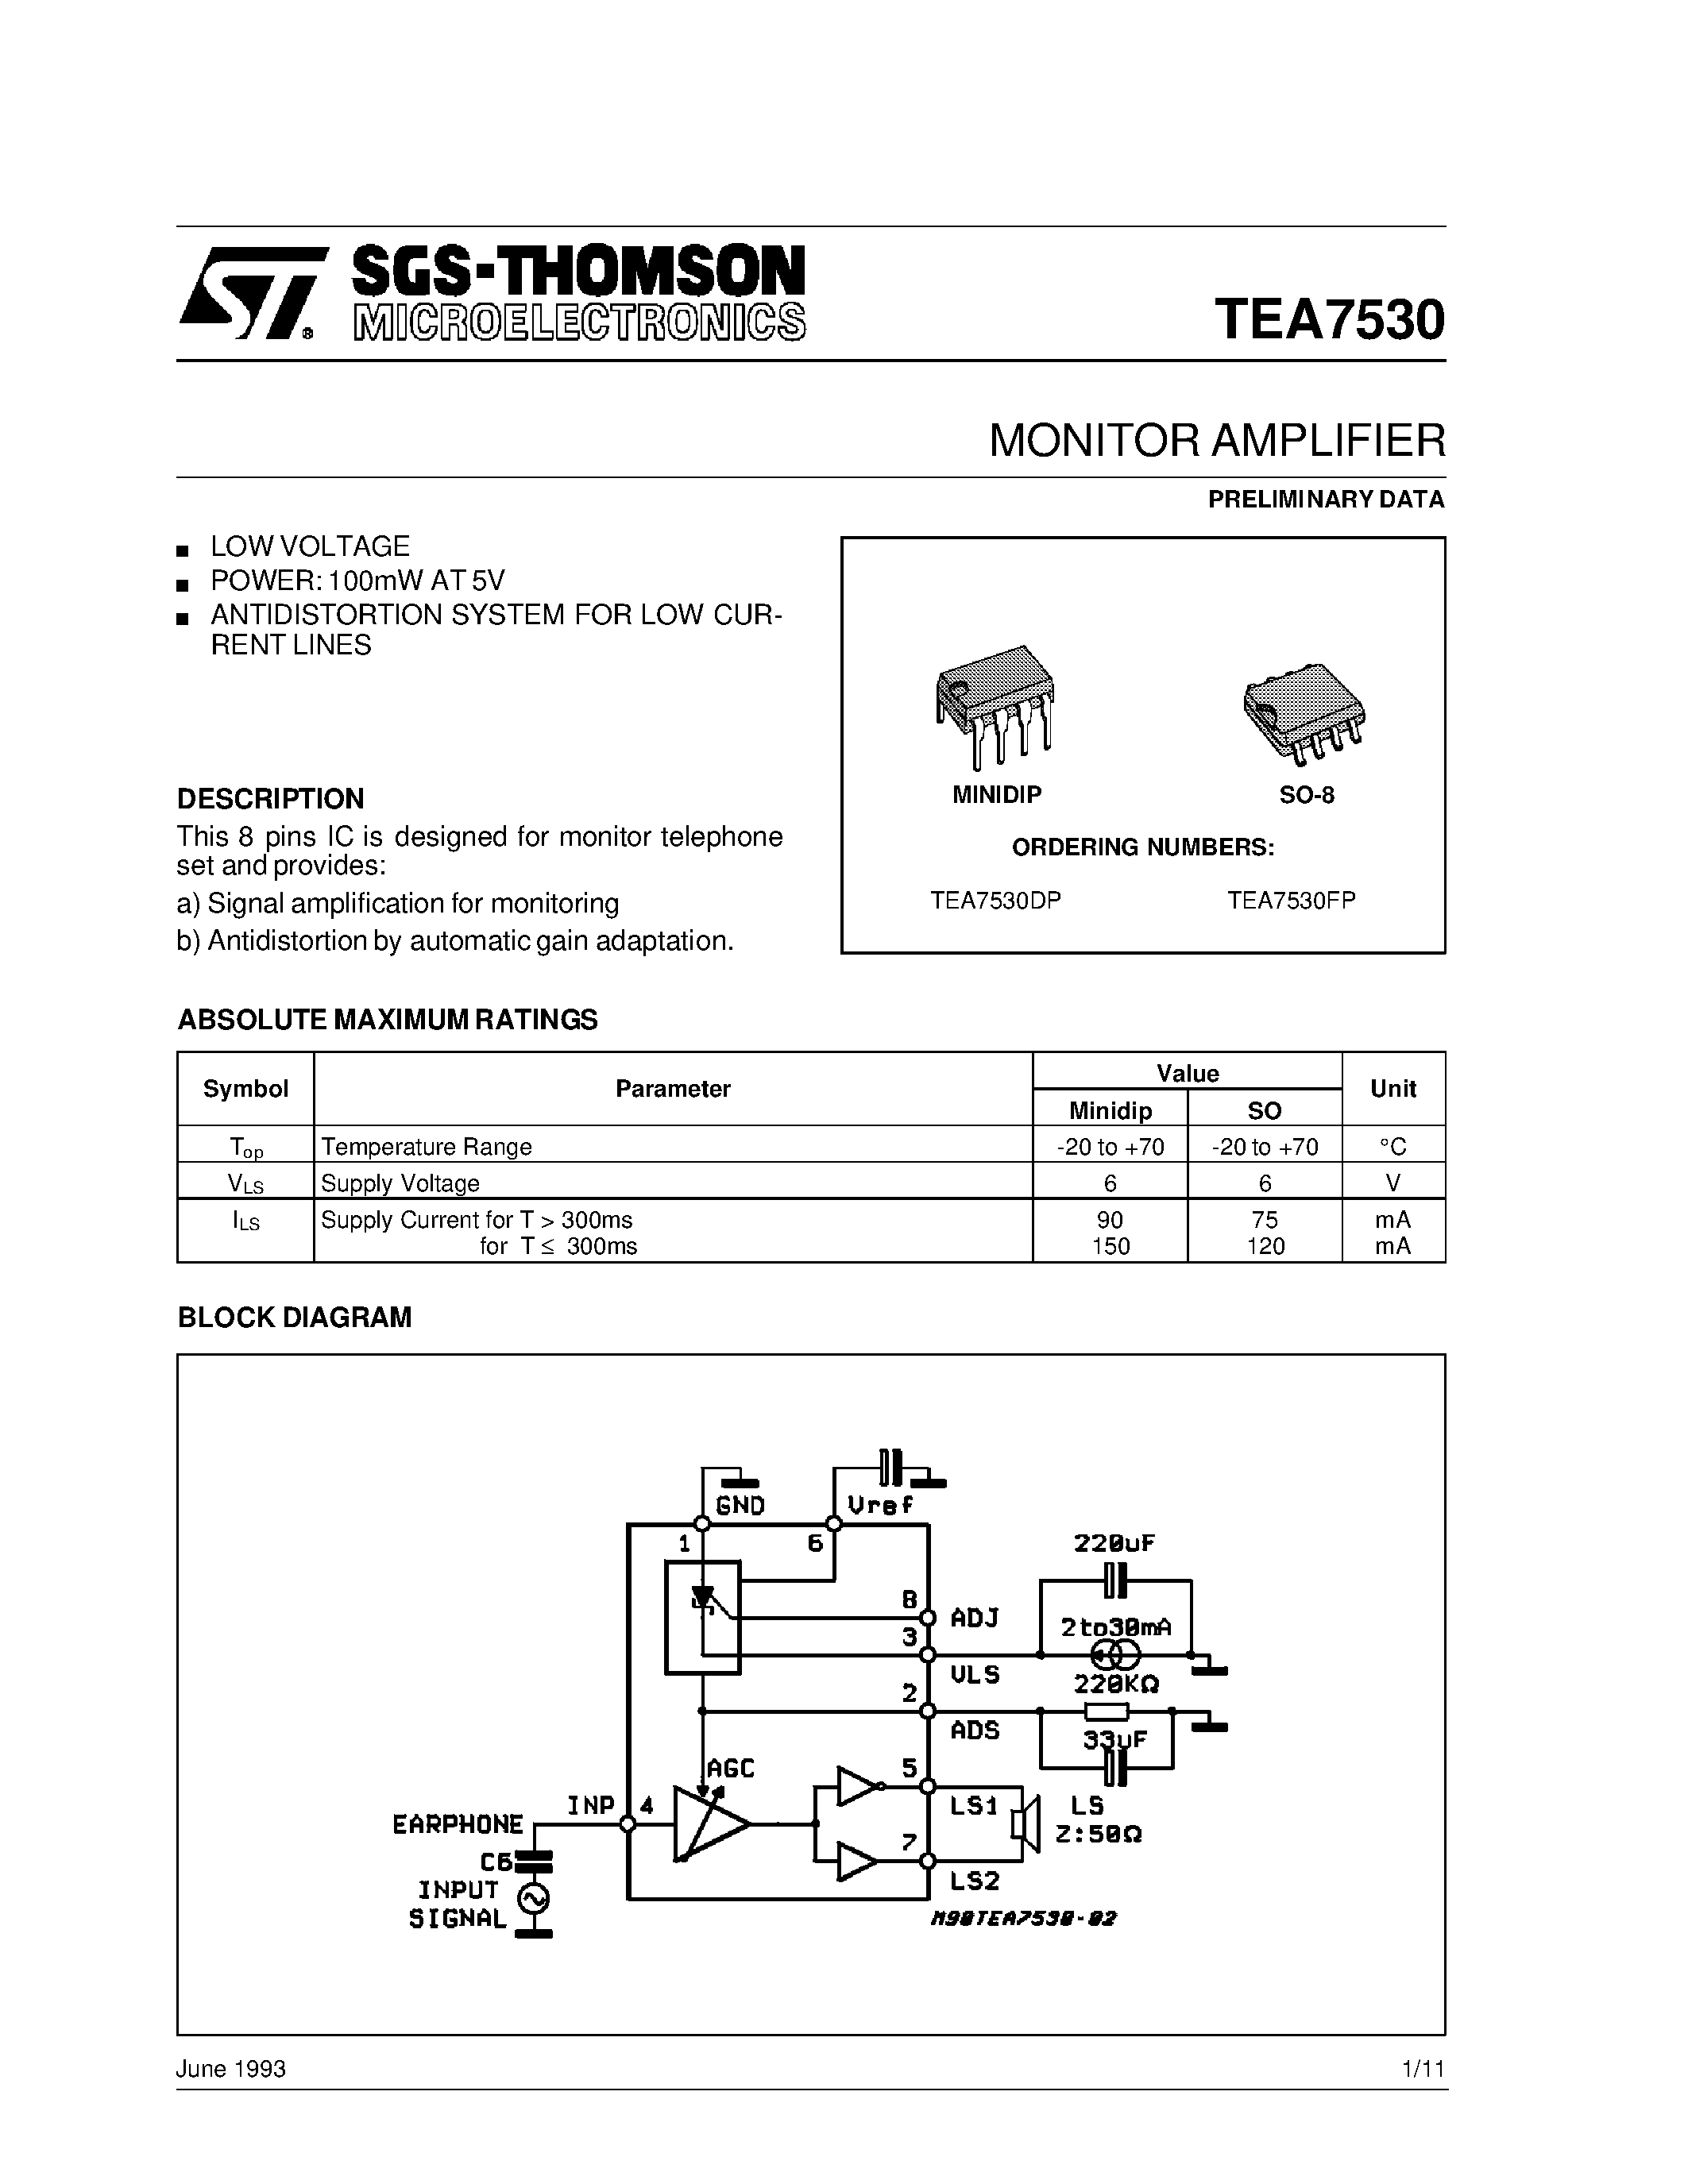 Datasheet TEA7530DP - MONITOR AMPLIFIER page 1